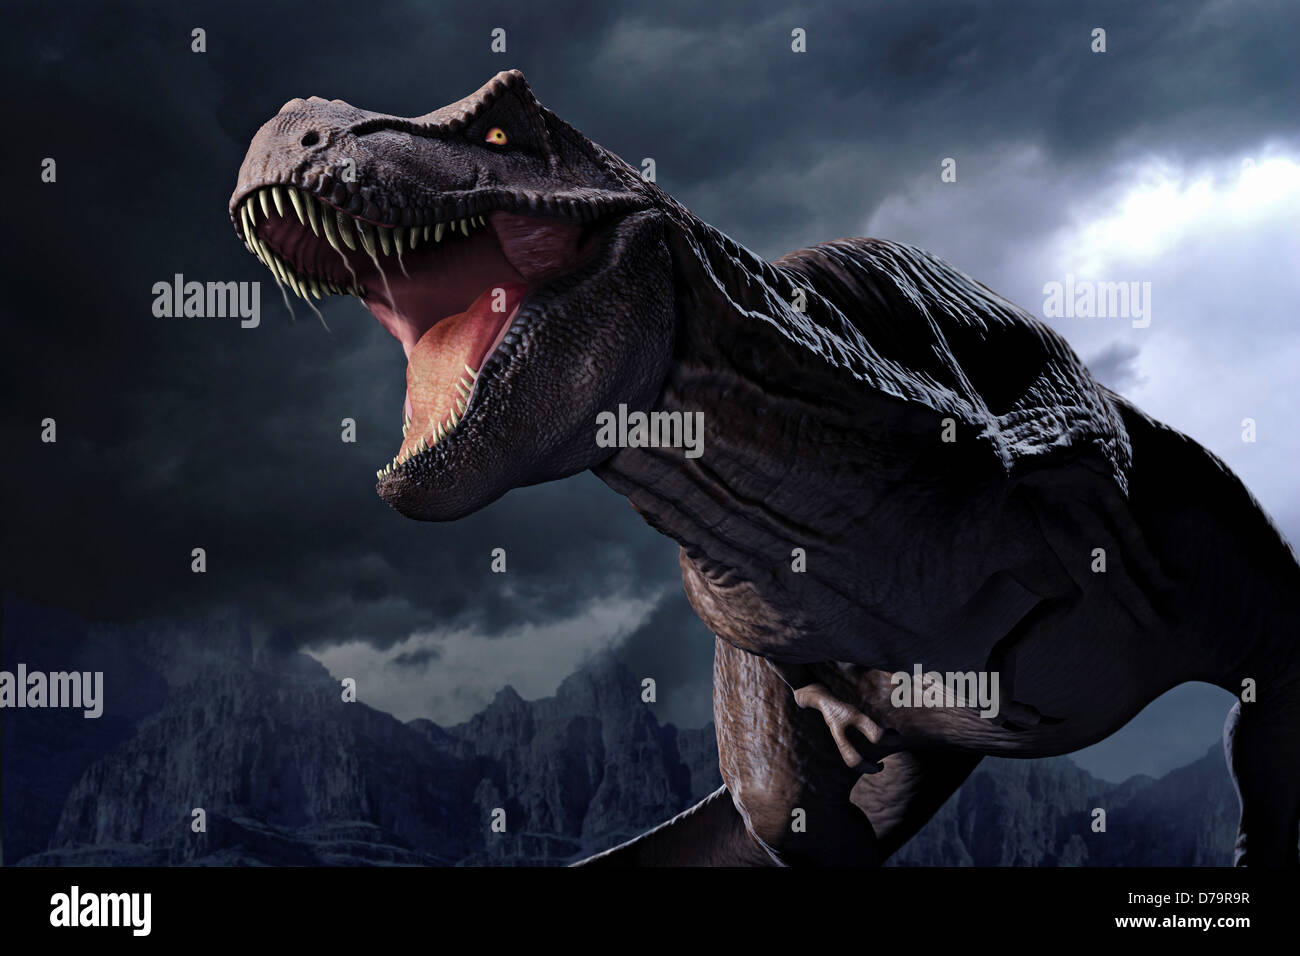 Tirannosauro immagini e fotografie stock ad alta risoluzione - Alamy